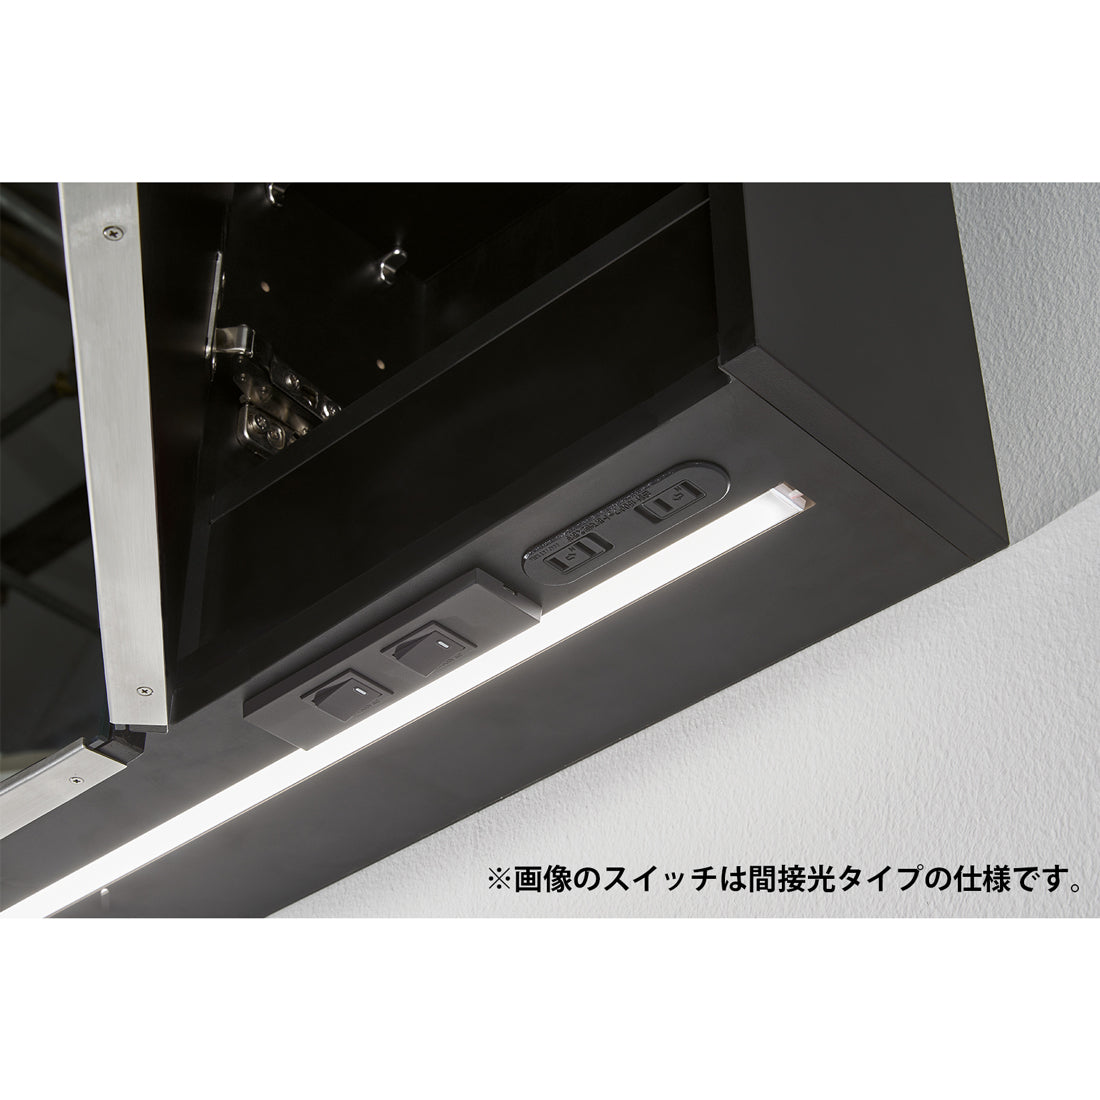 【新商品】LED一体型ミラーキャビネット 曇り止めヒーター付き 一面鏡 三面鏡 前面光 間接光